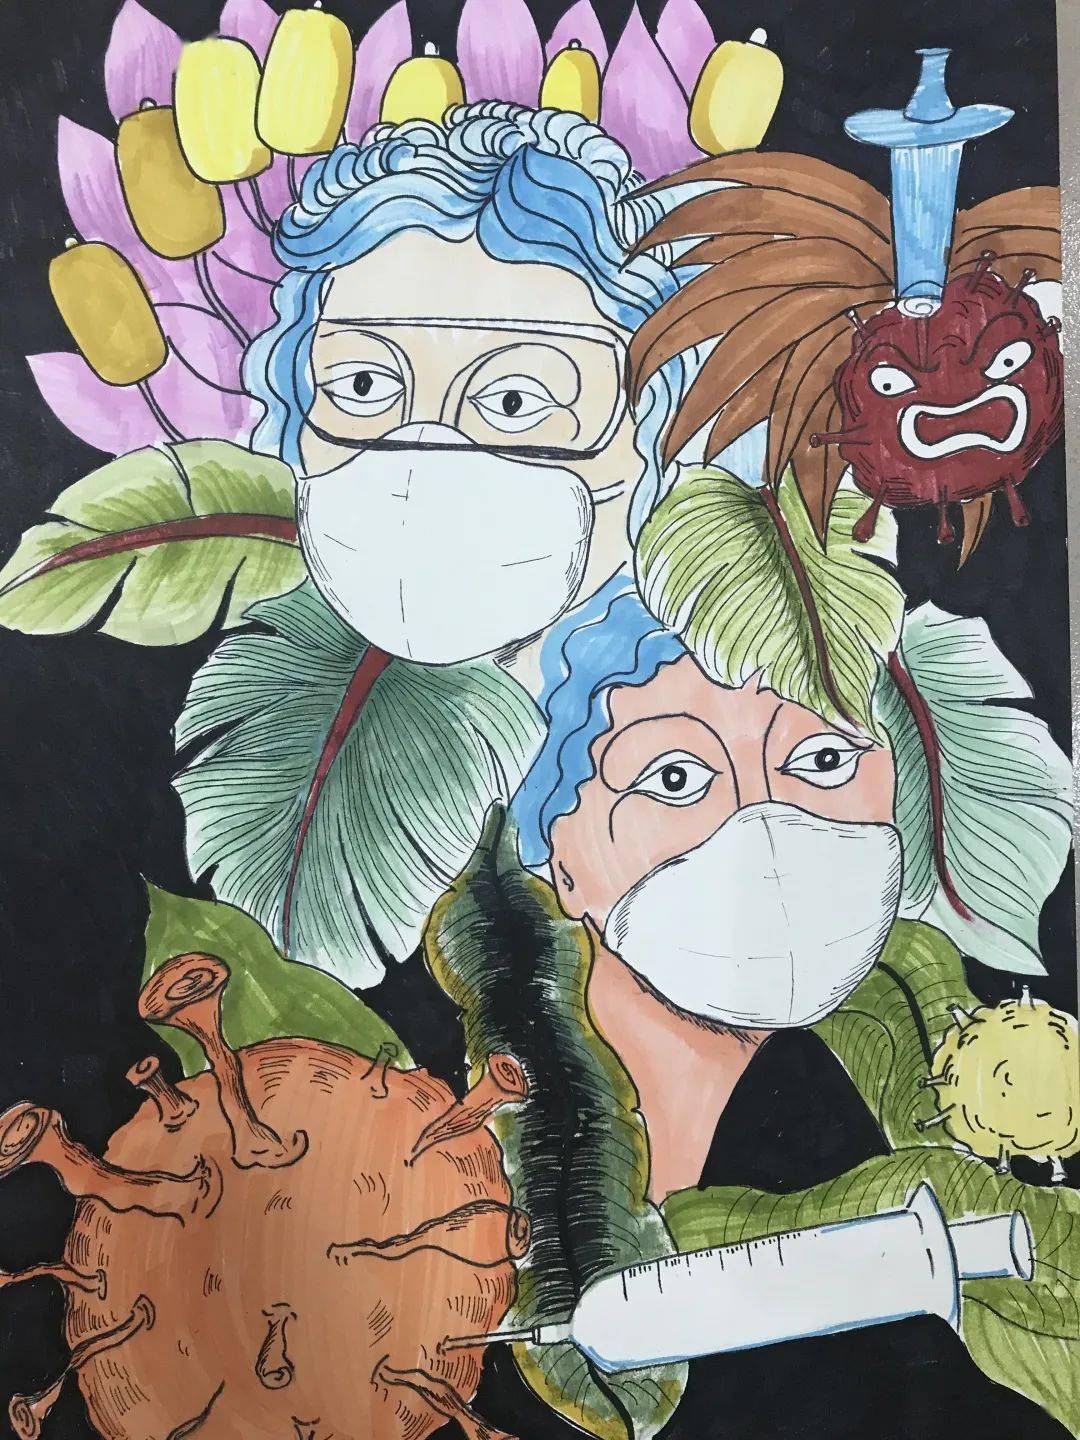 线上画展 | "艺"起抗疫——夏津县教育系统师生抗击疫情绘画作品(美术